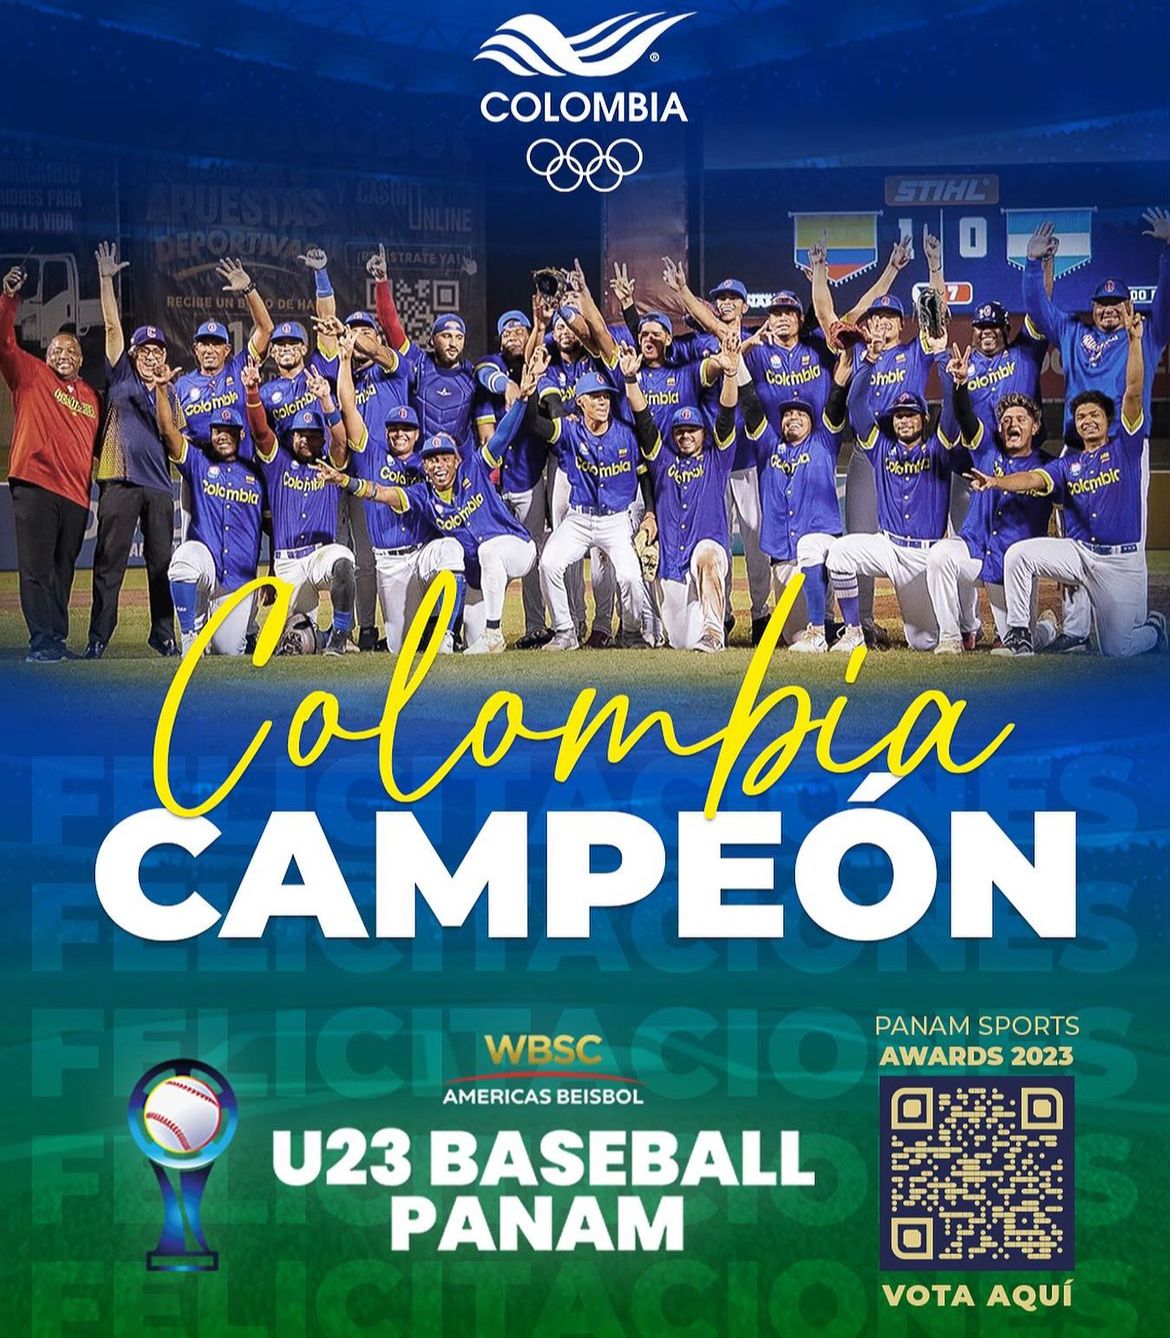 Histórica victoria de Colombia en el Pre-Mundial de Béisbol WBSC Américas U-23